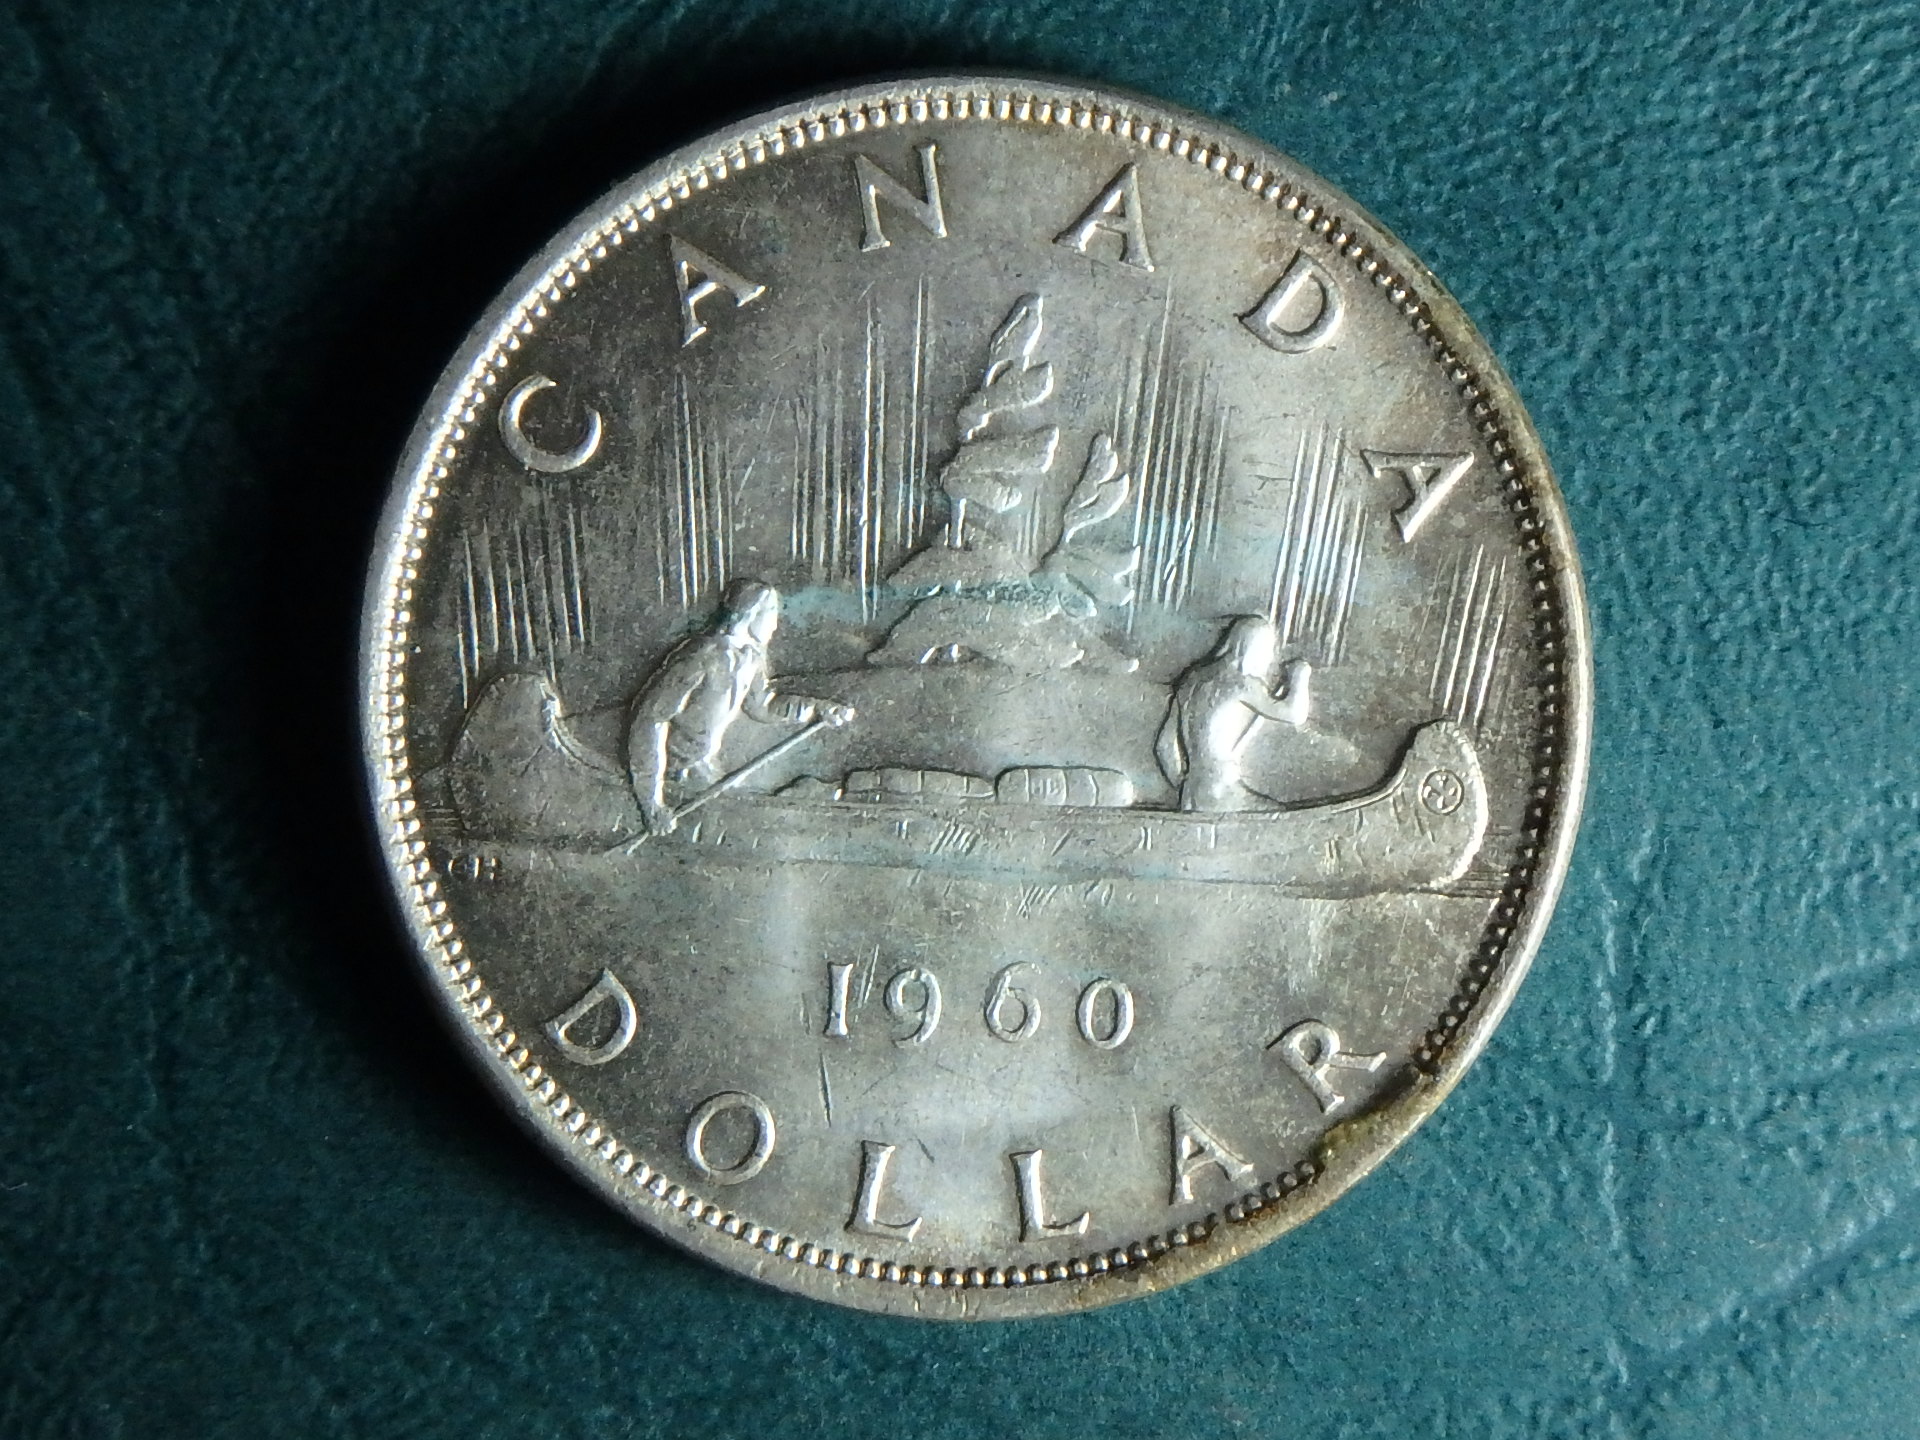 1960 Canada 1 dol rev.JPG